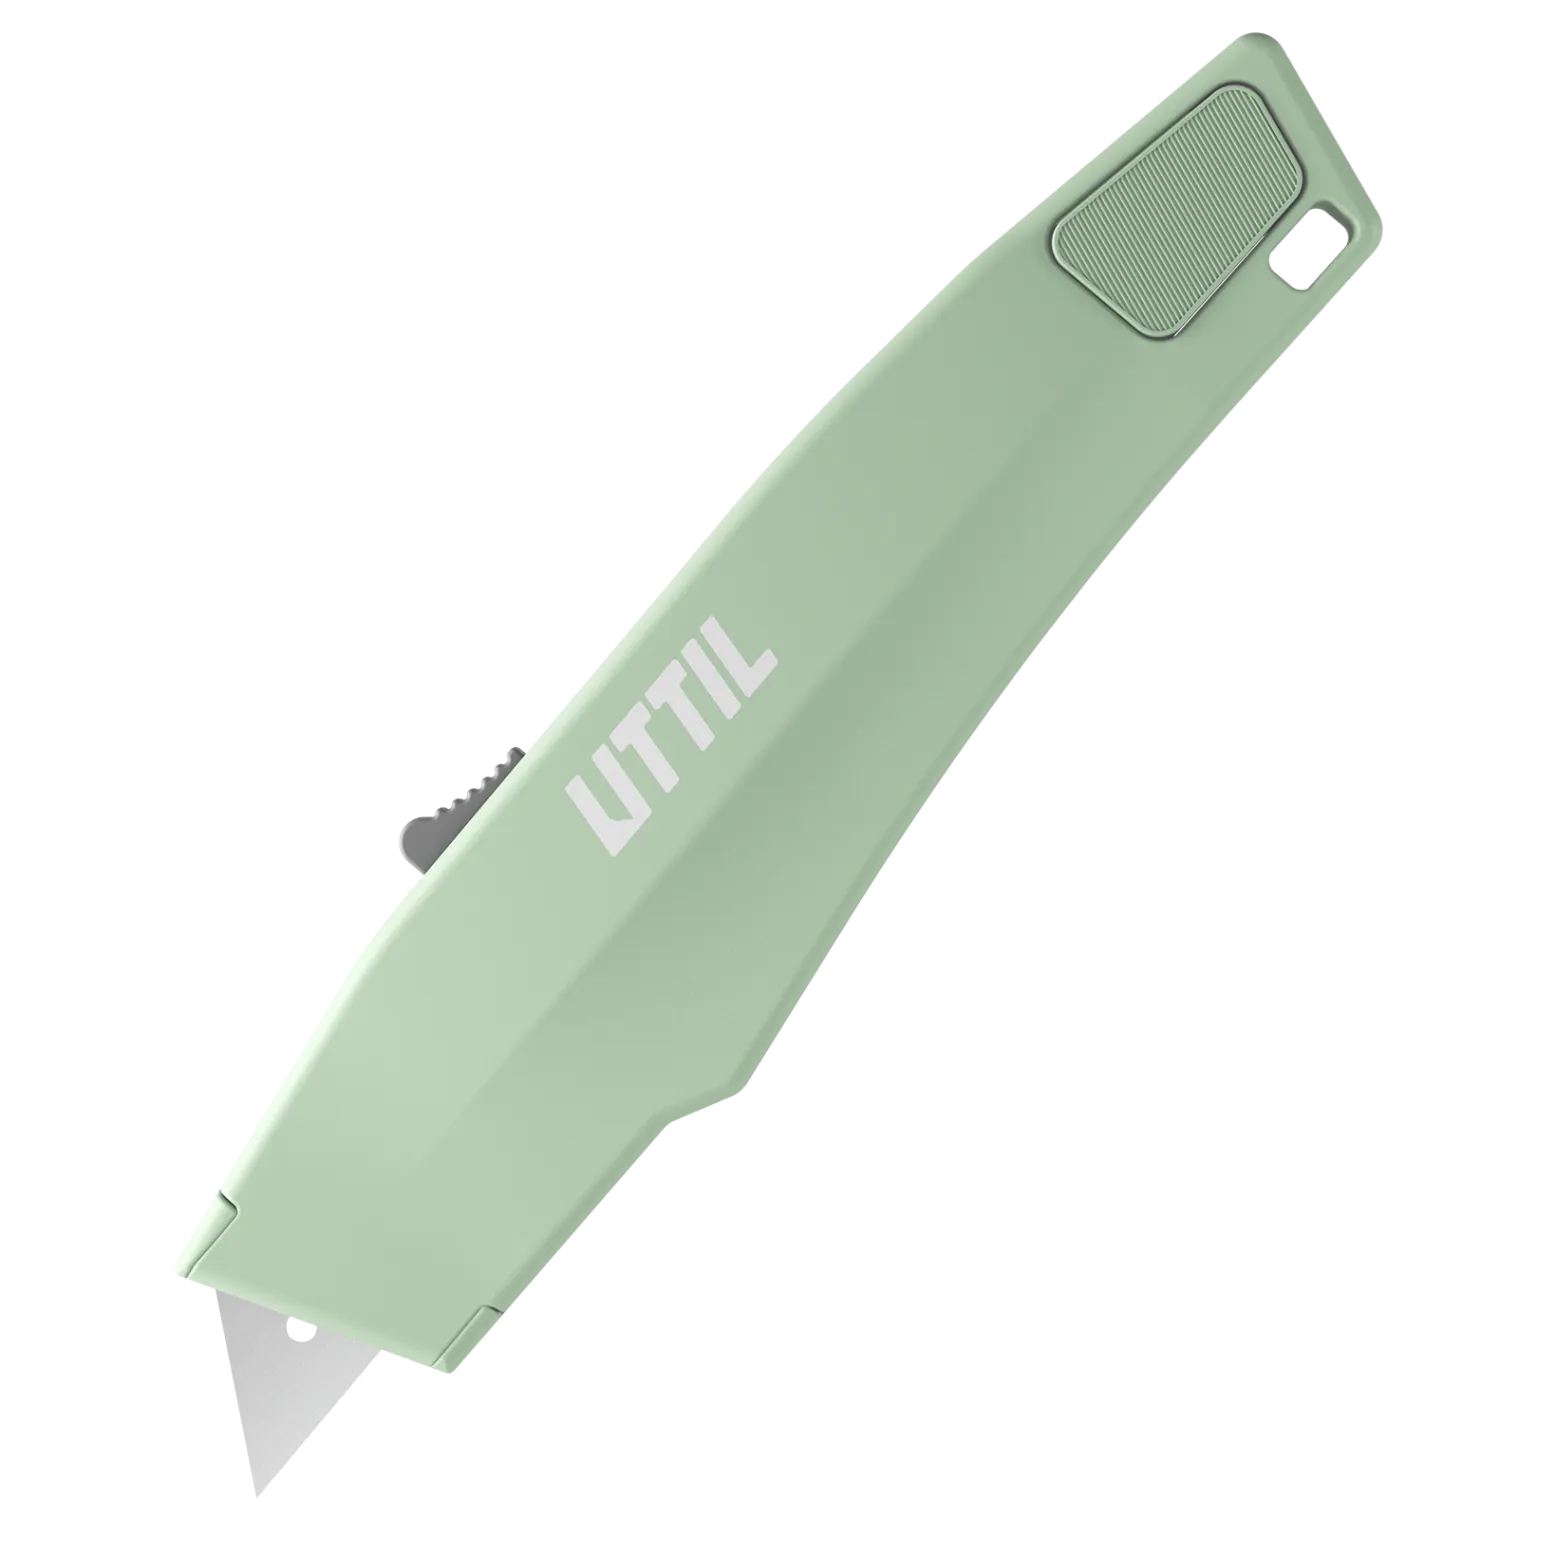 pruk-06-heavy-duty-knife